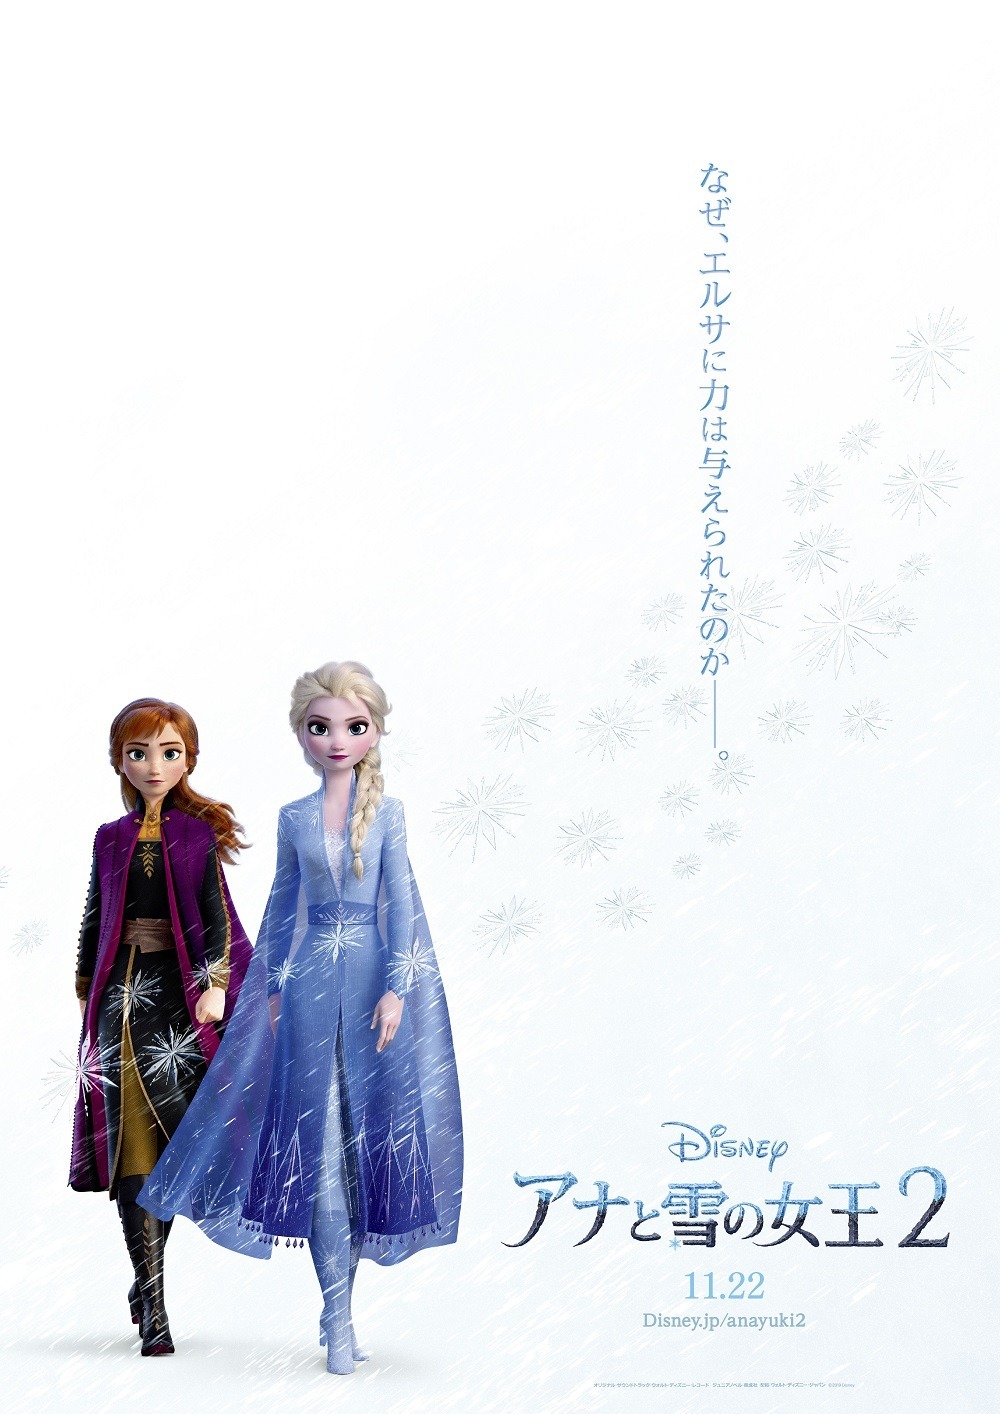 アナと雪の女王2 なぜ エルサに力は与えられたのか 壮大な物語を予感させる日本版ポスター公開 アニメ アニメ